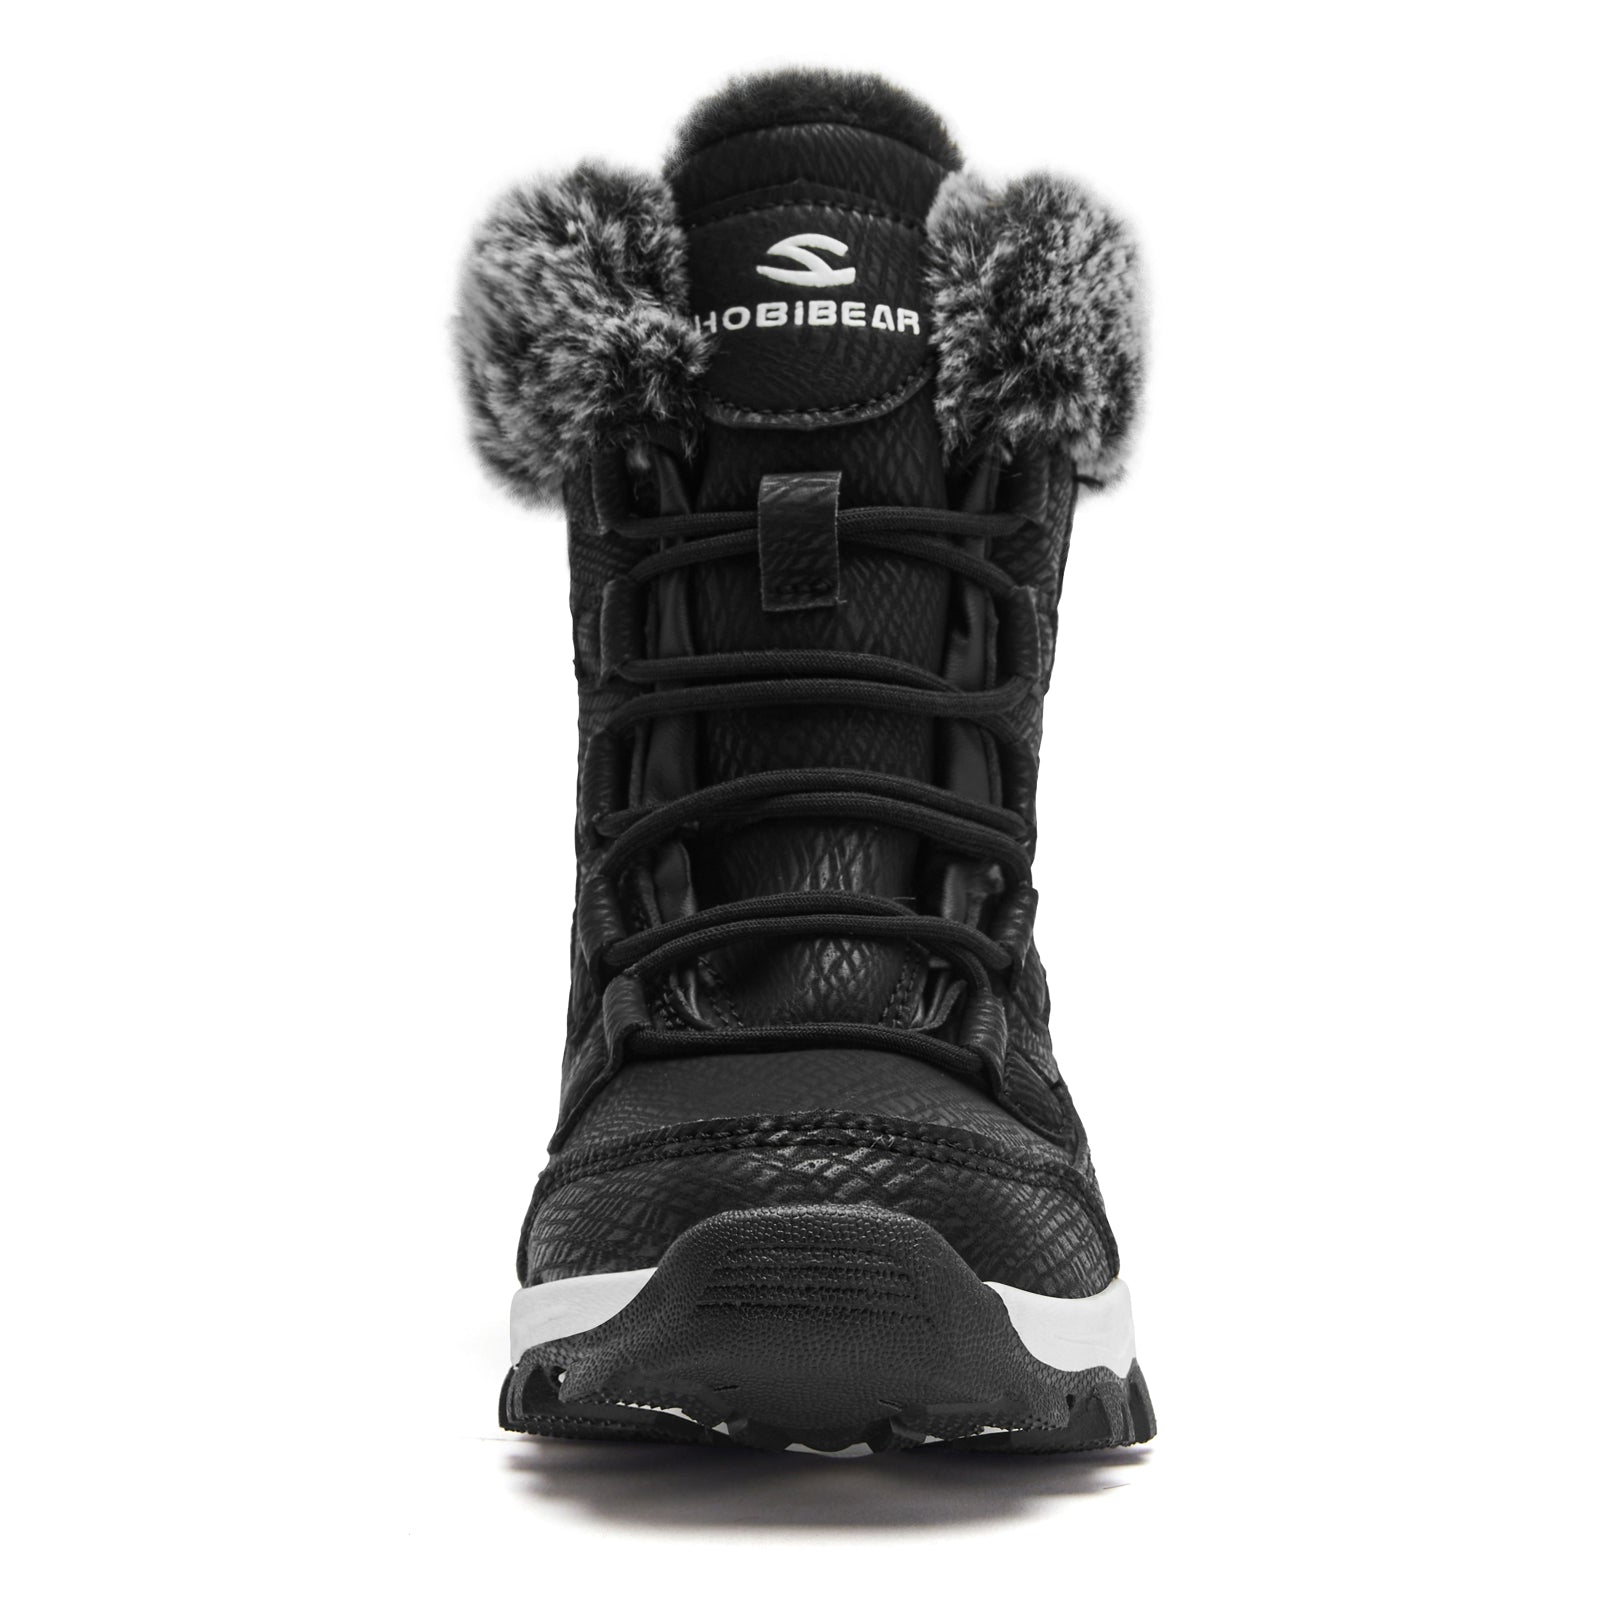 Kids High Snow Boots AW7772